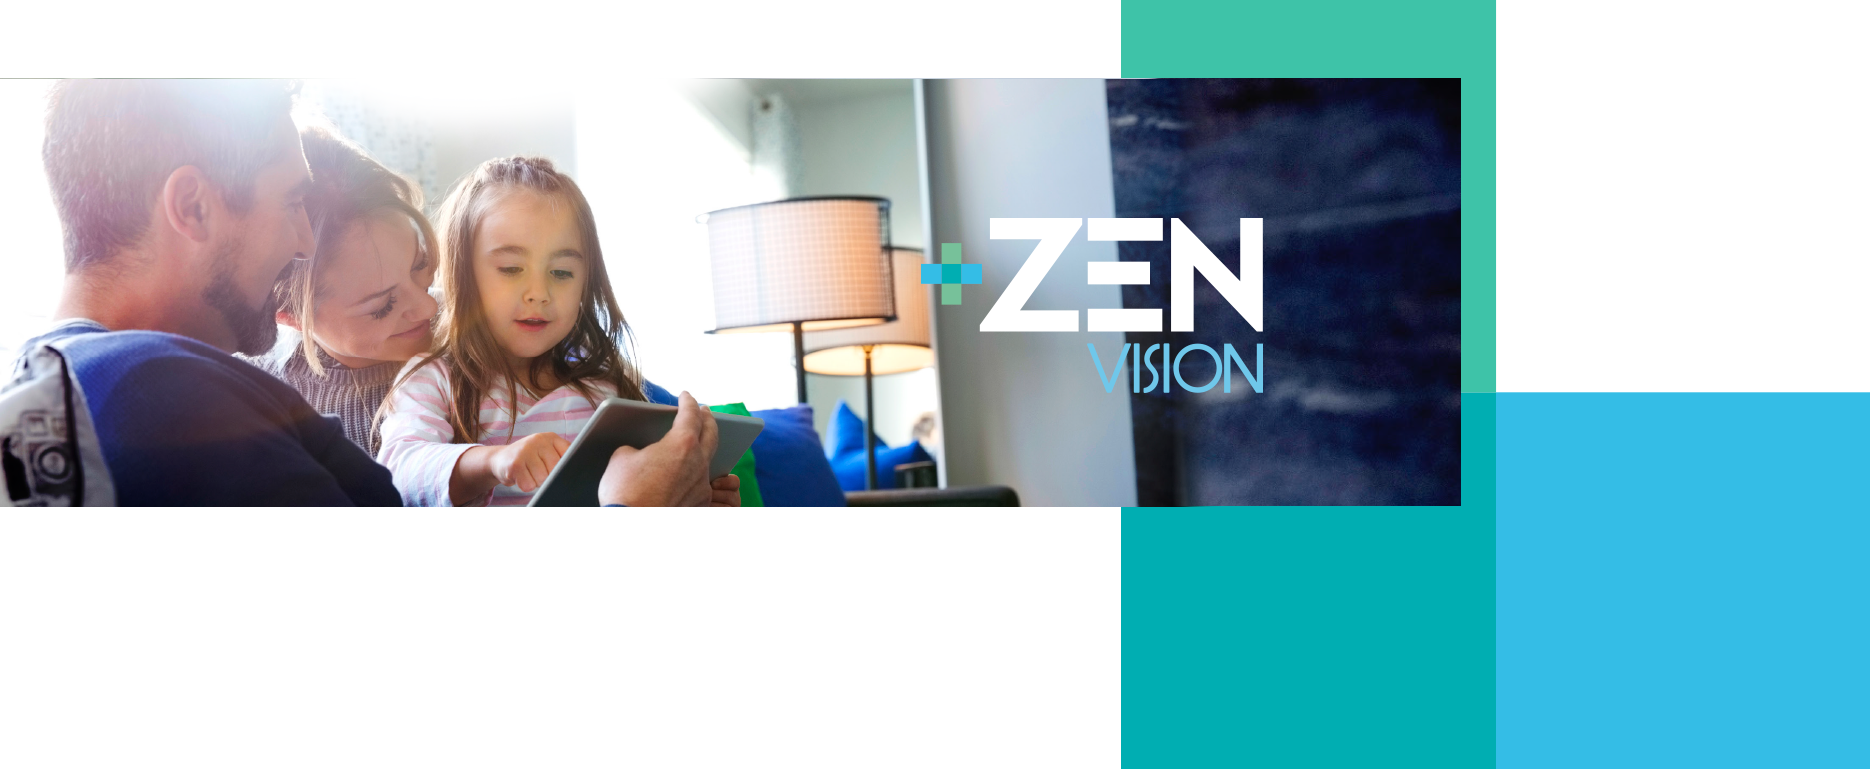 Descubrir Zen Vision